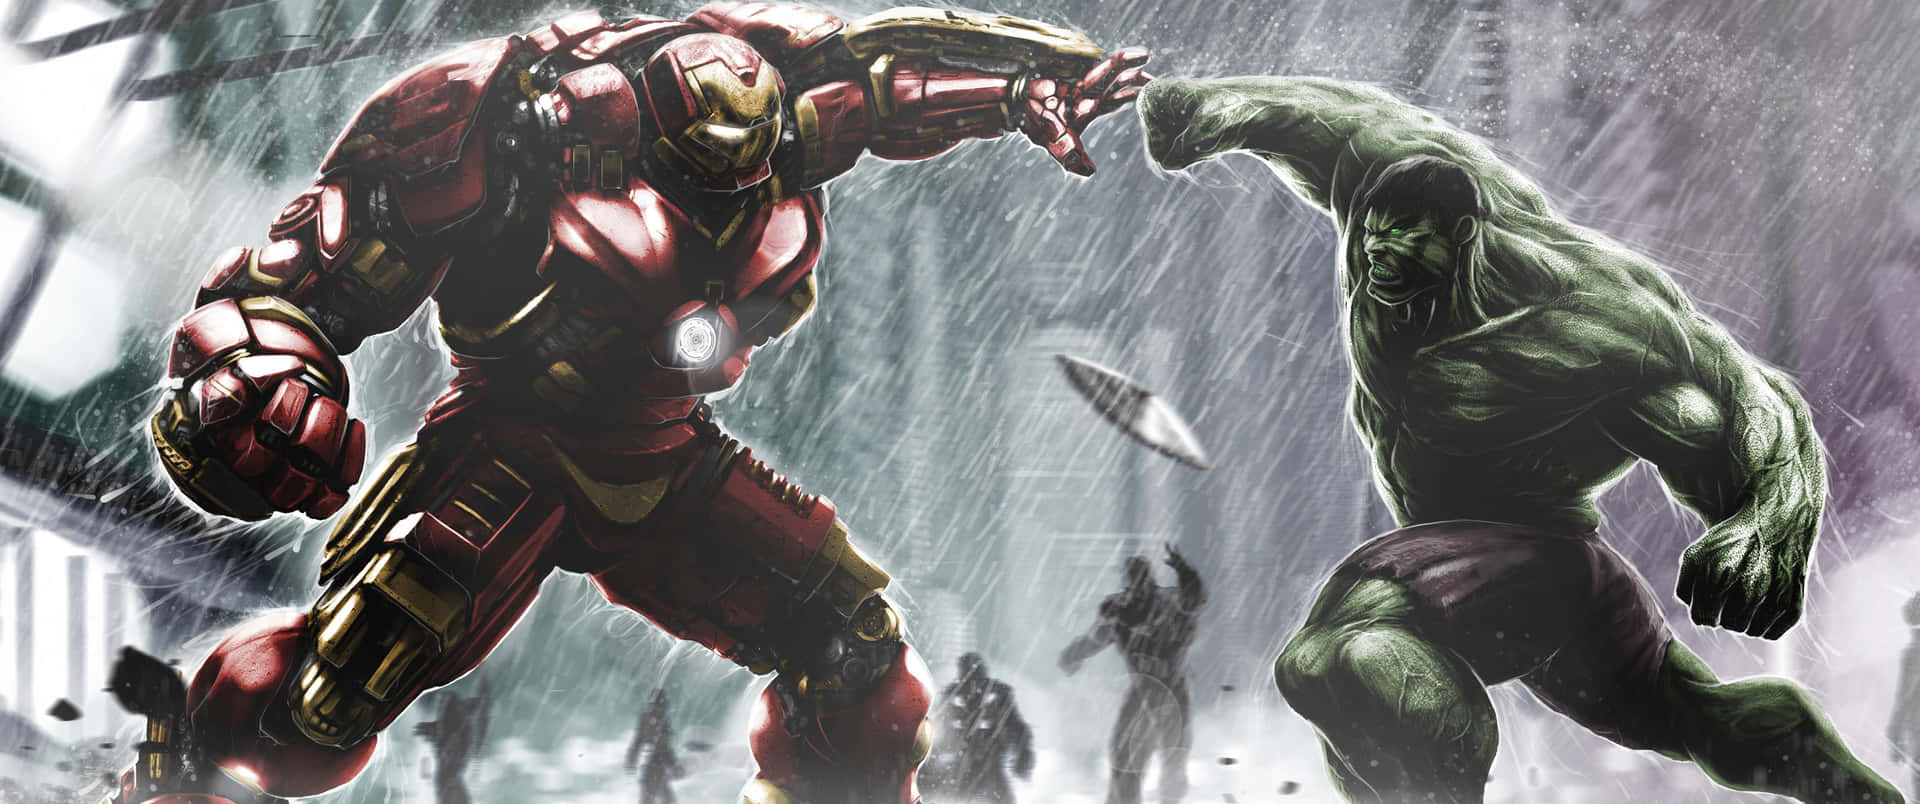 Hulk og Iron Man kæmper i regnen